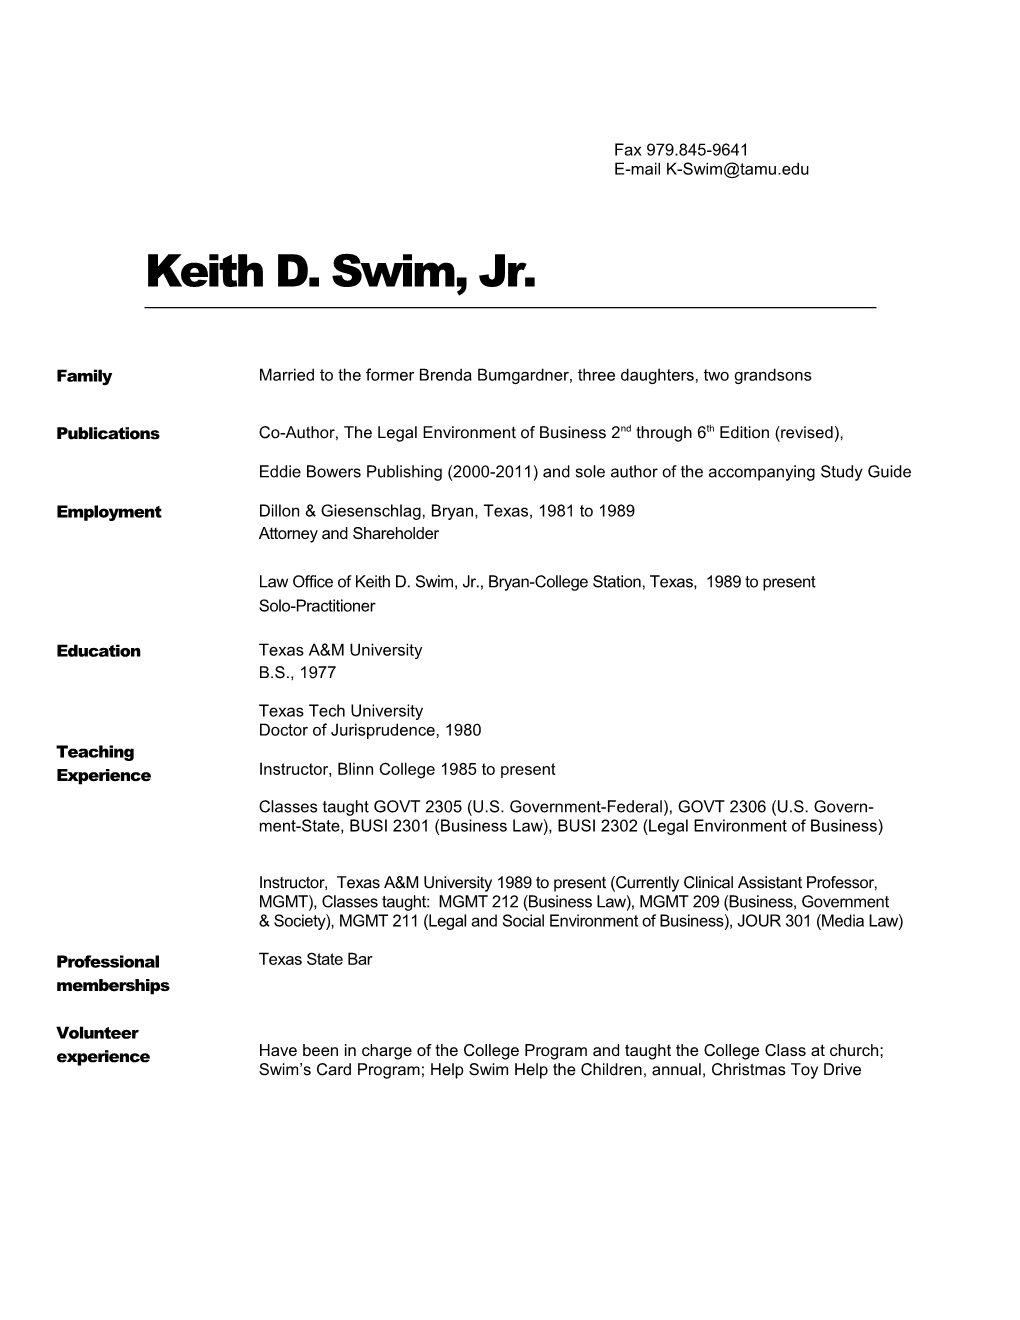 Keith D. Swim, Jr